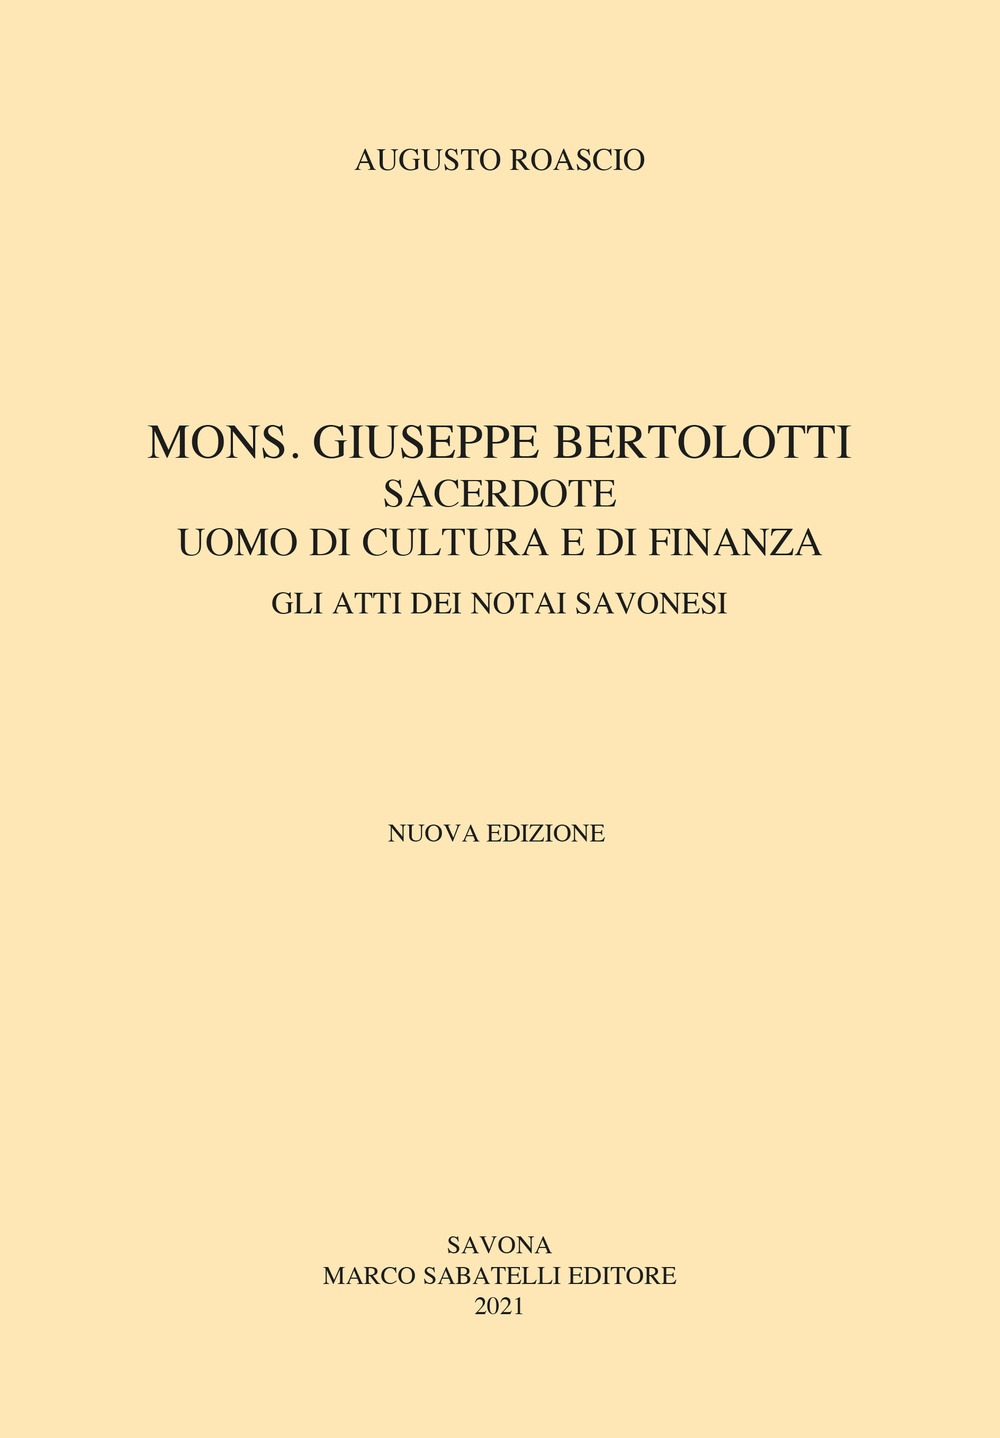 Mons. Giuseppe Bertolotti. Sacerdote, uomo di cultura e di finanza